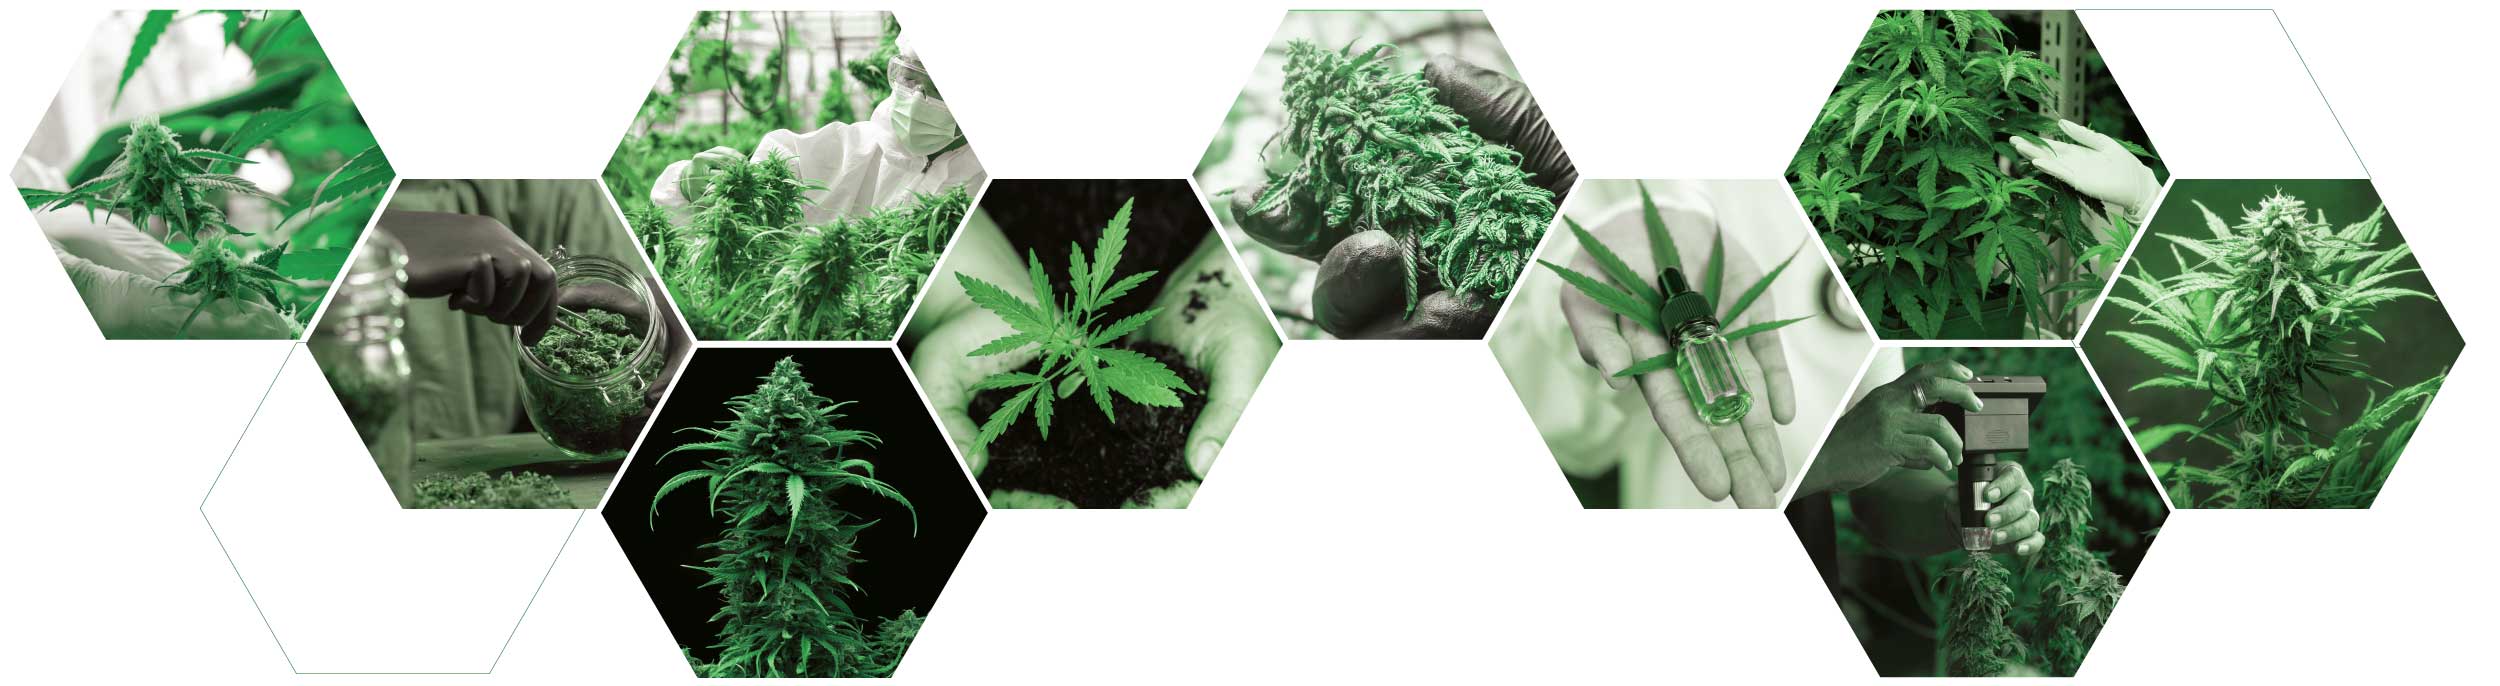 HarvestIQ in-house cannabis analyzer